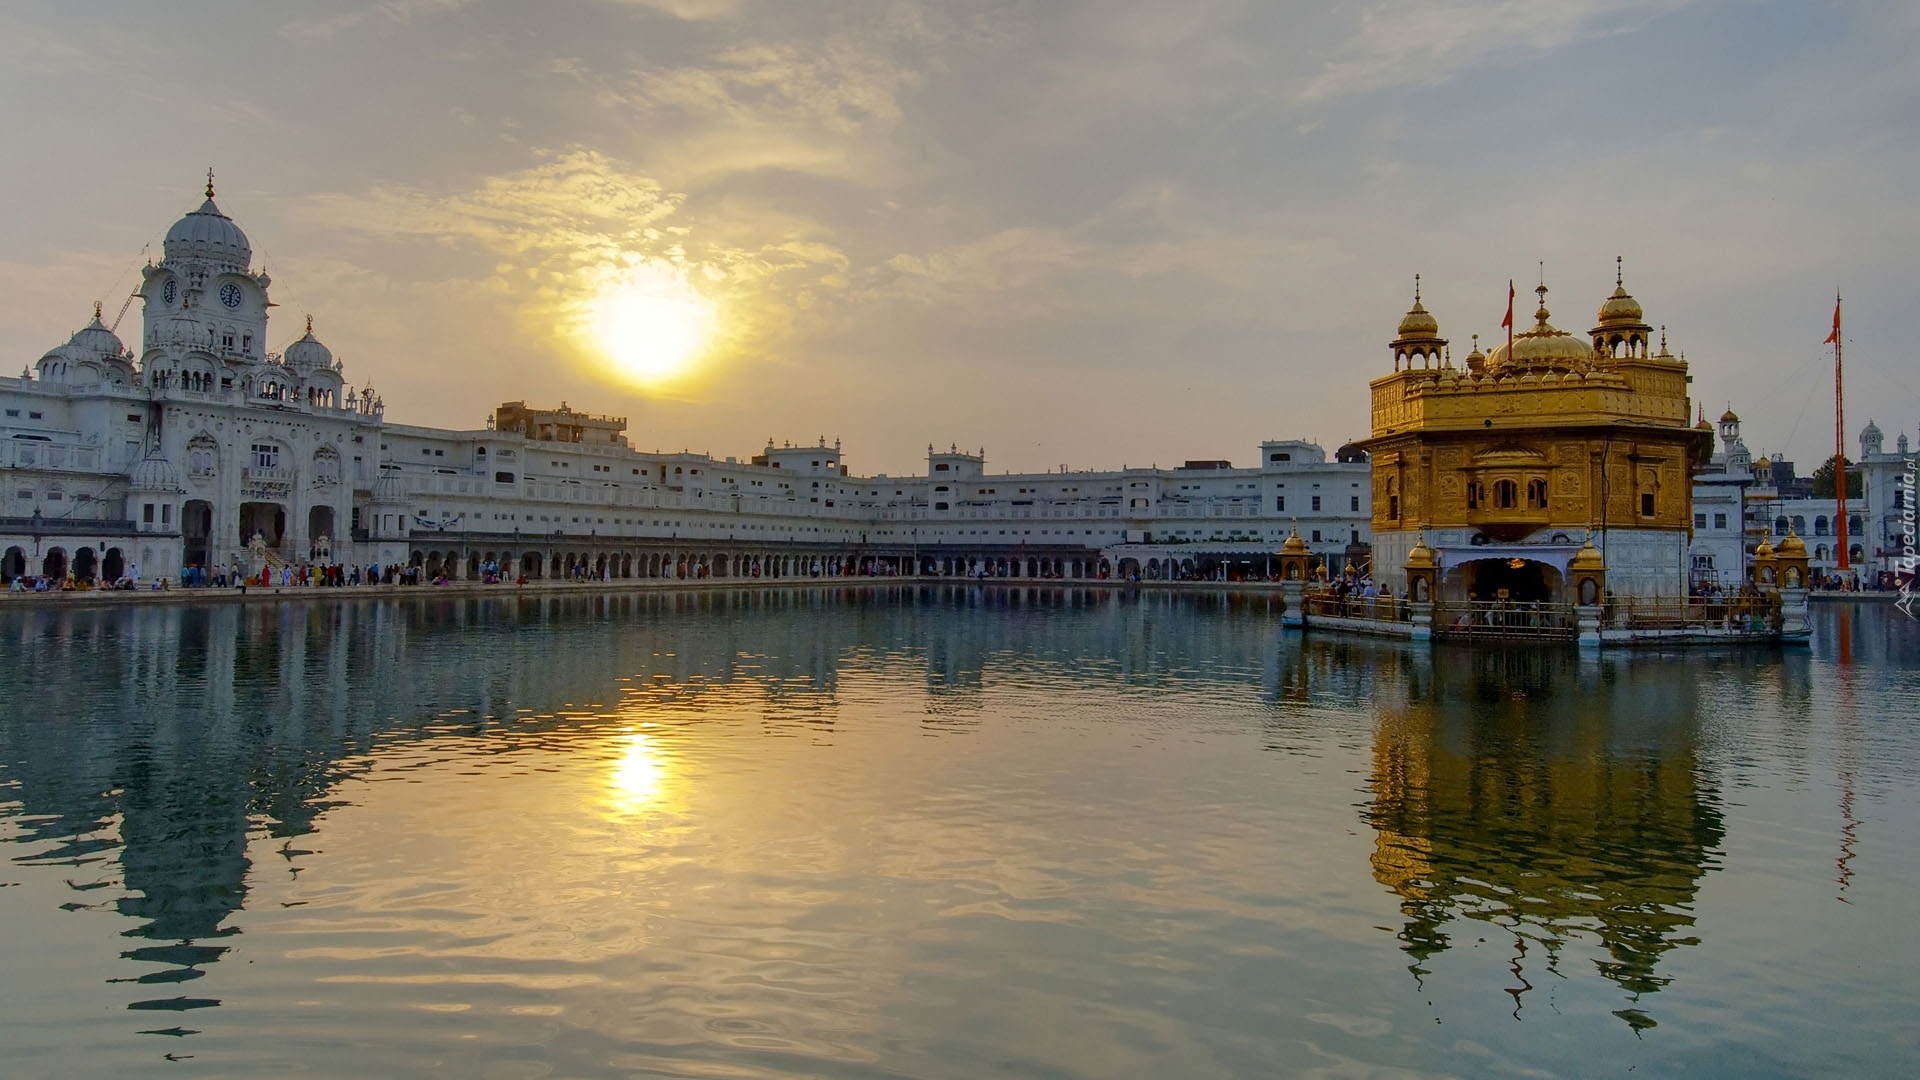 Indie, Złota, Świątynia